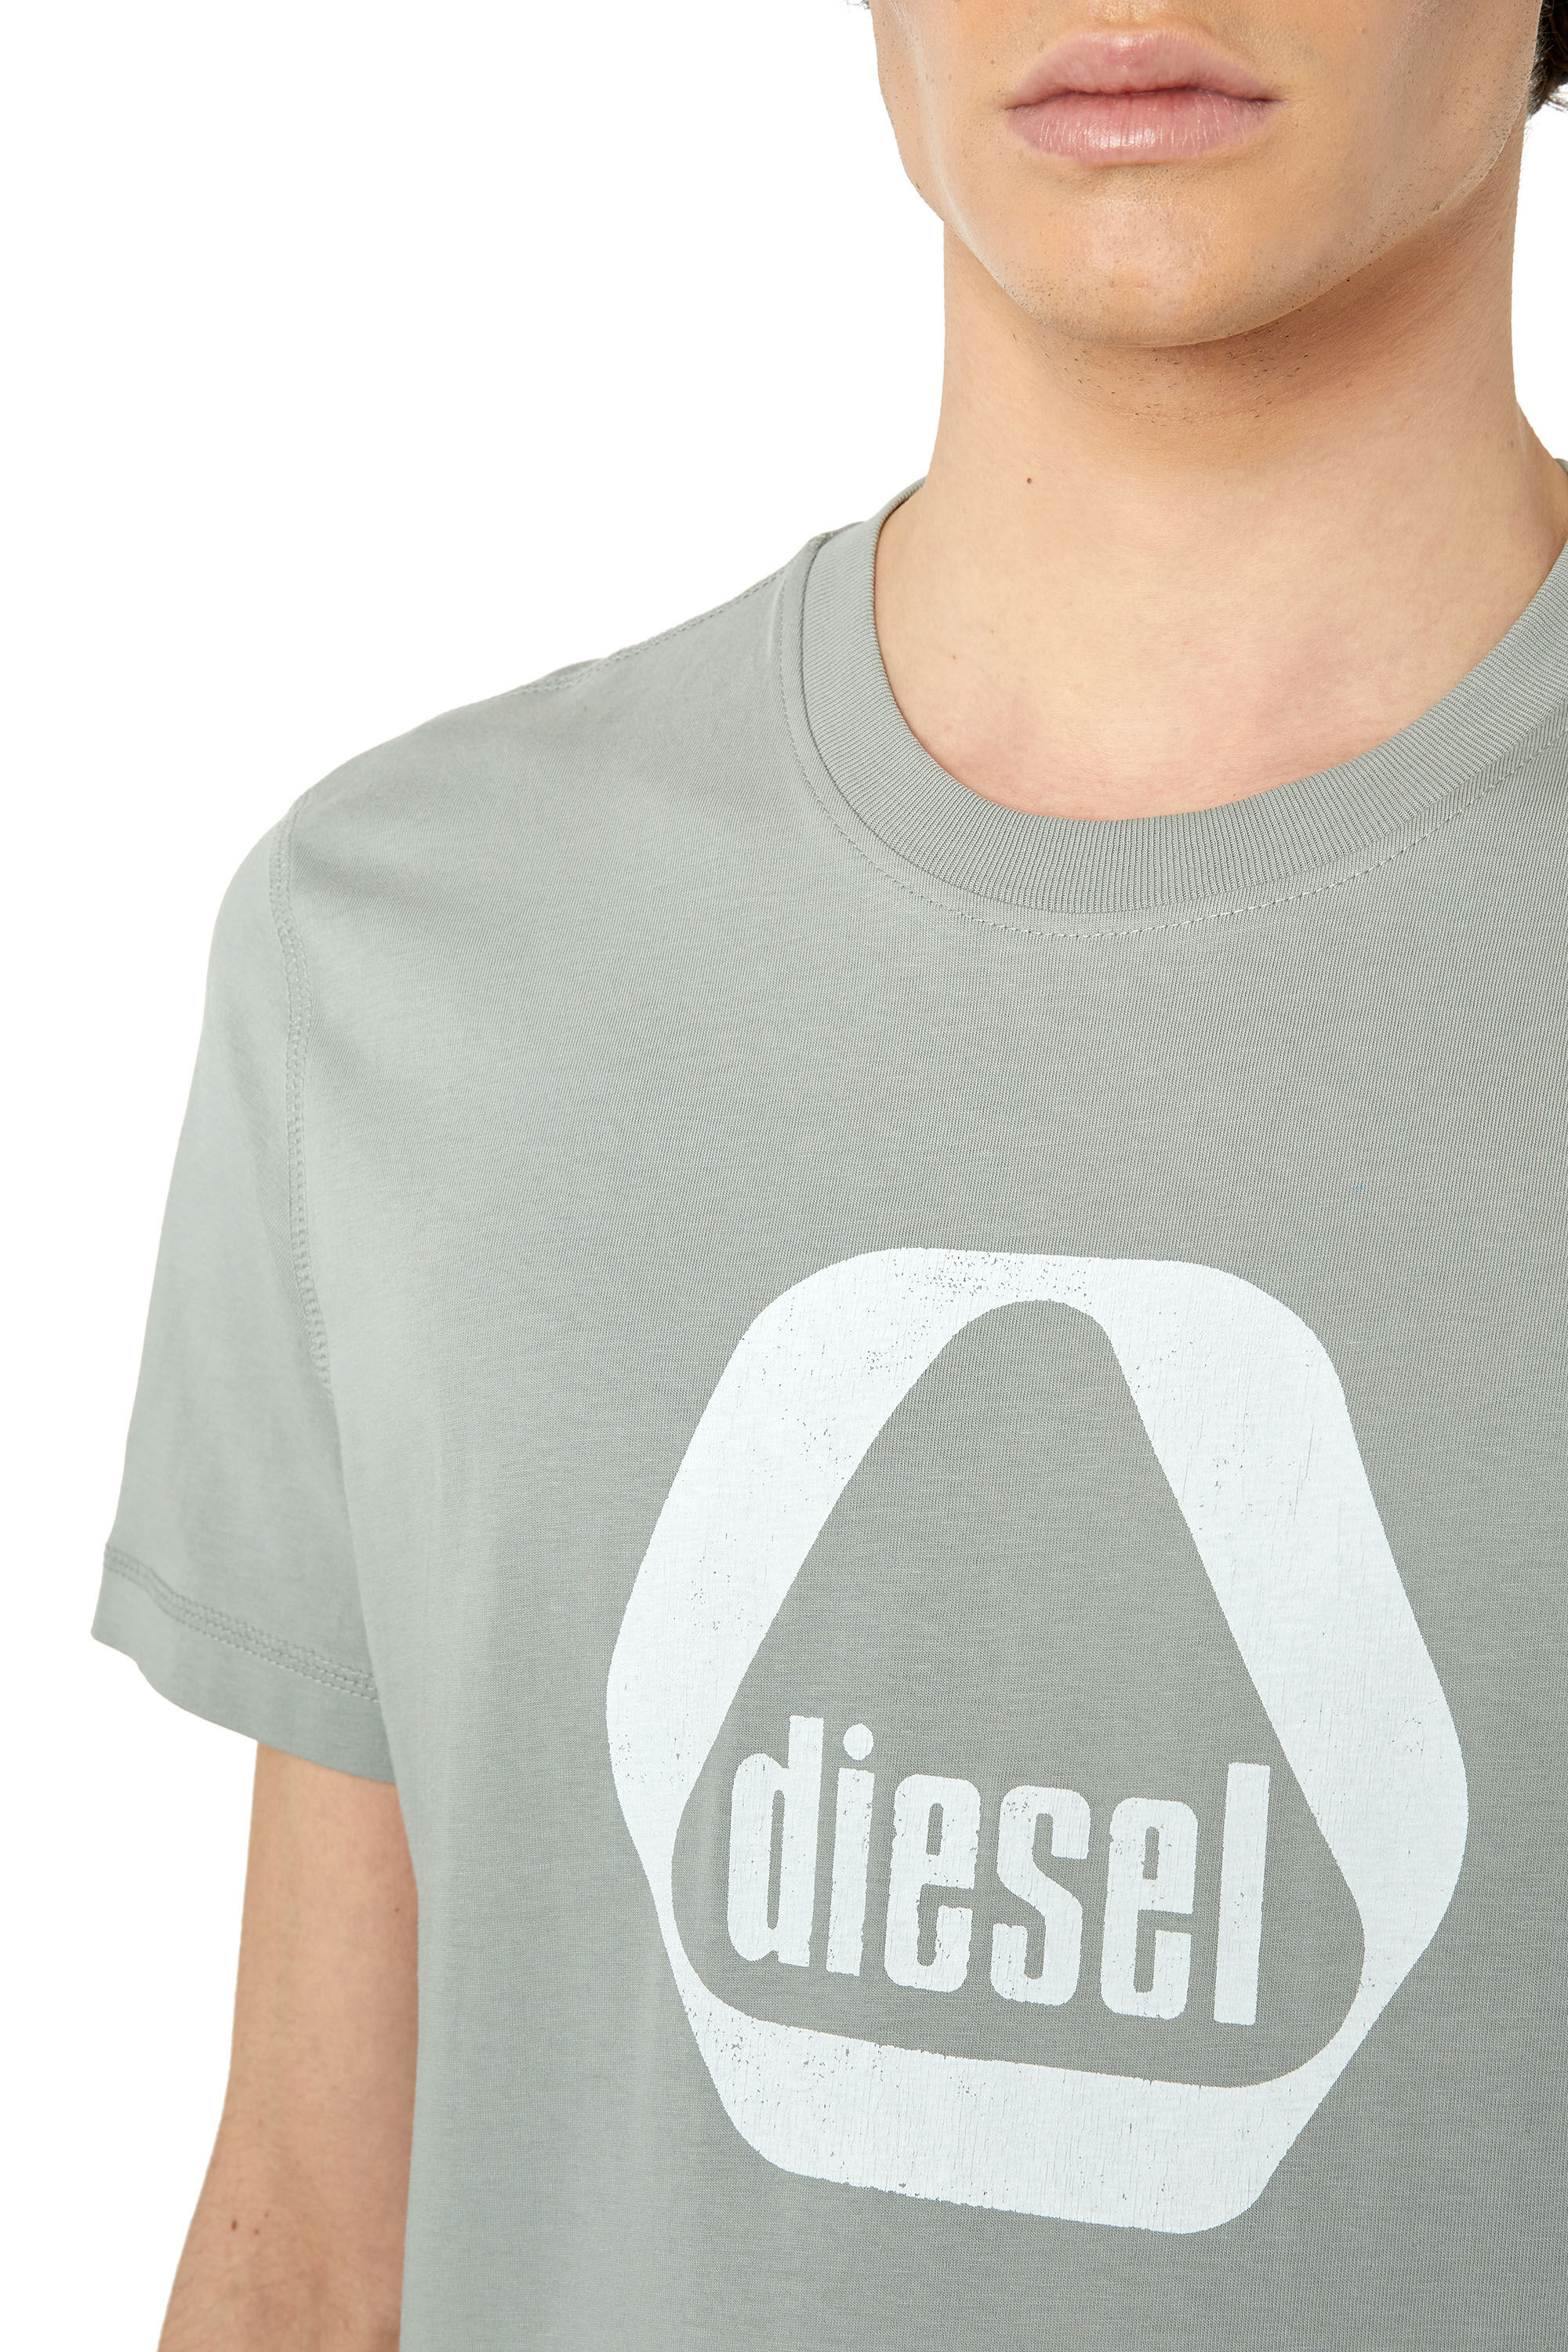 Diesel - T-DIEGOR-G10, Gris Claro - Image 5